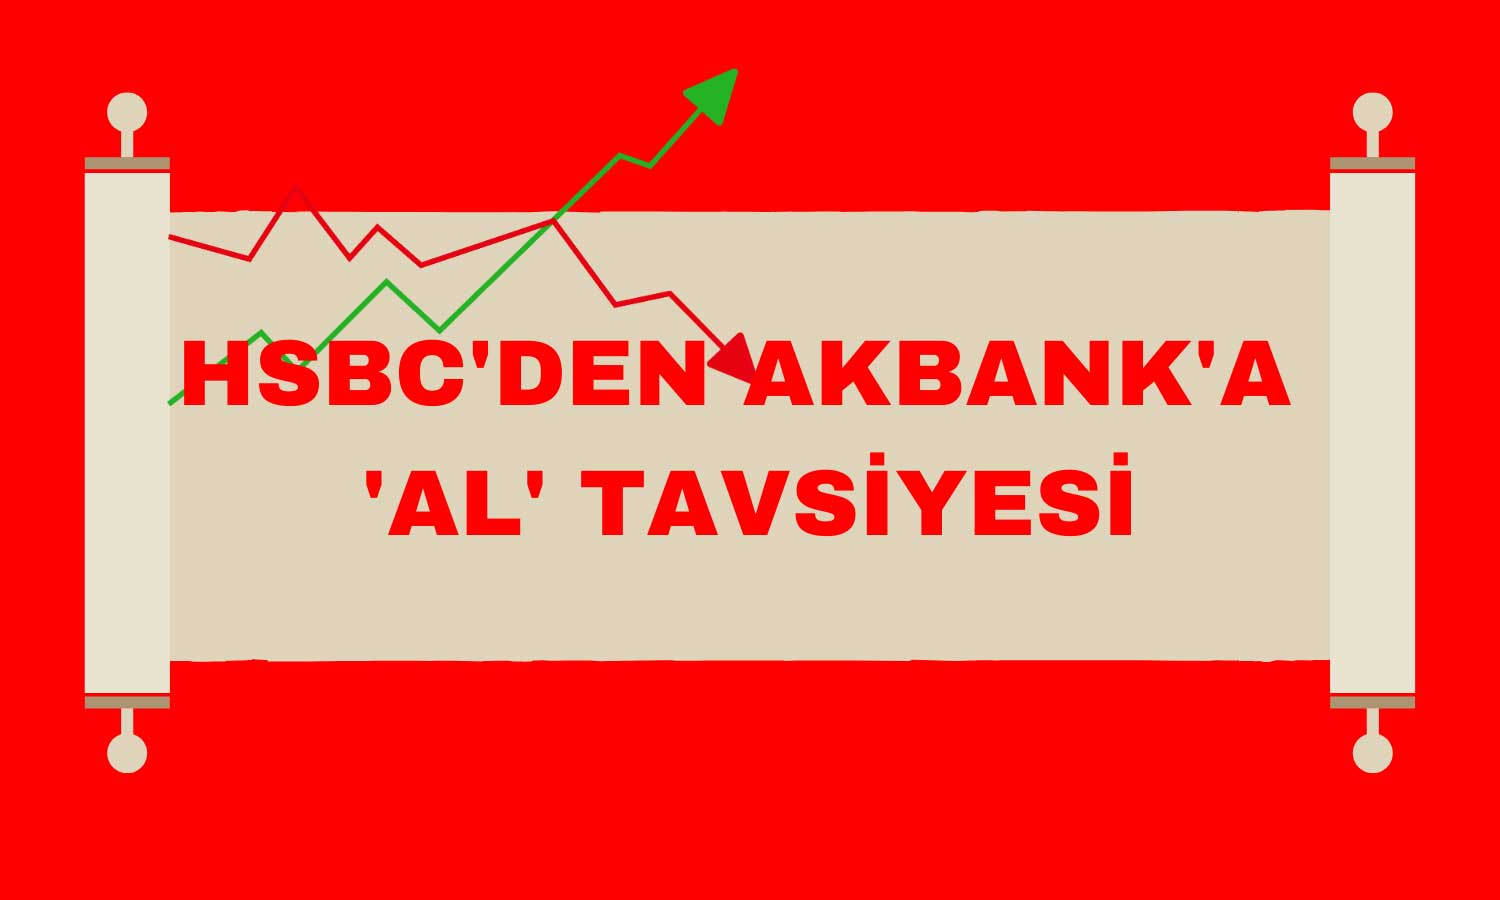 HSBC’den Akbank’a ‘Al’ Tavsiyesi: Hedef Fiyat Yükseldi